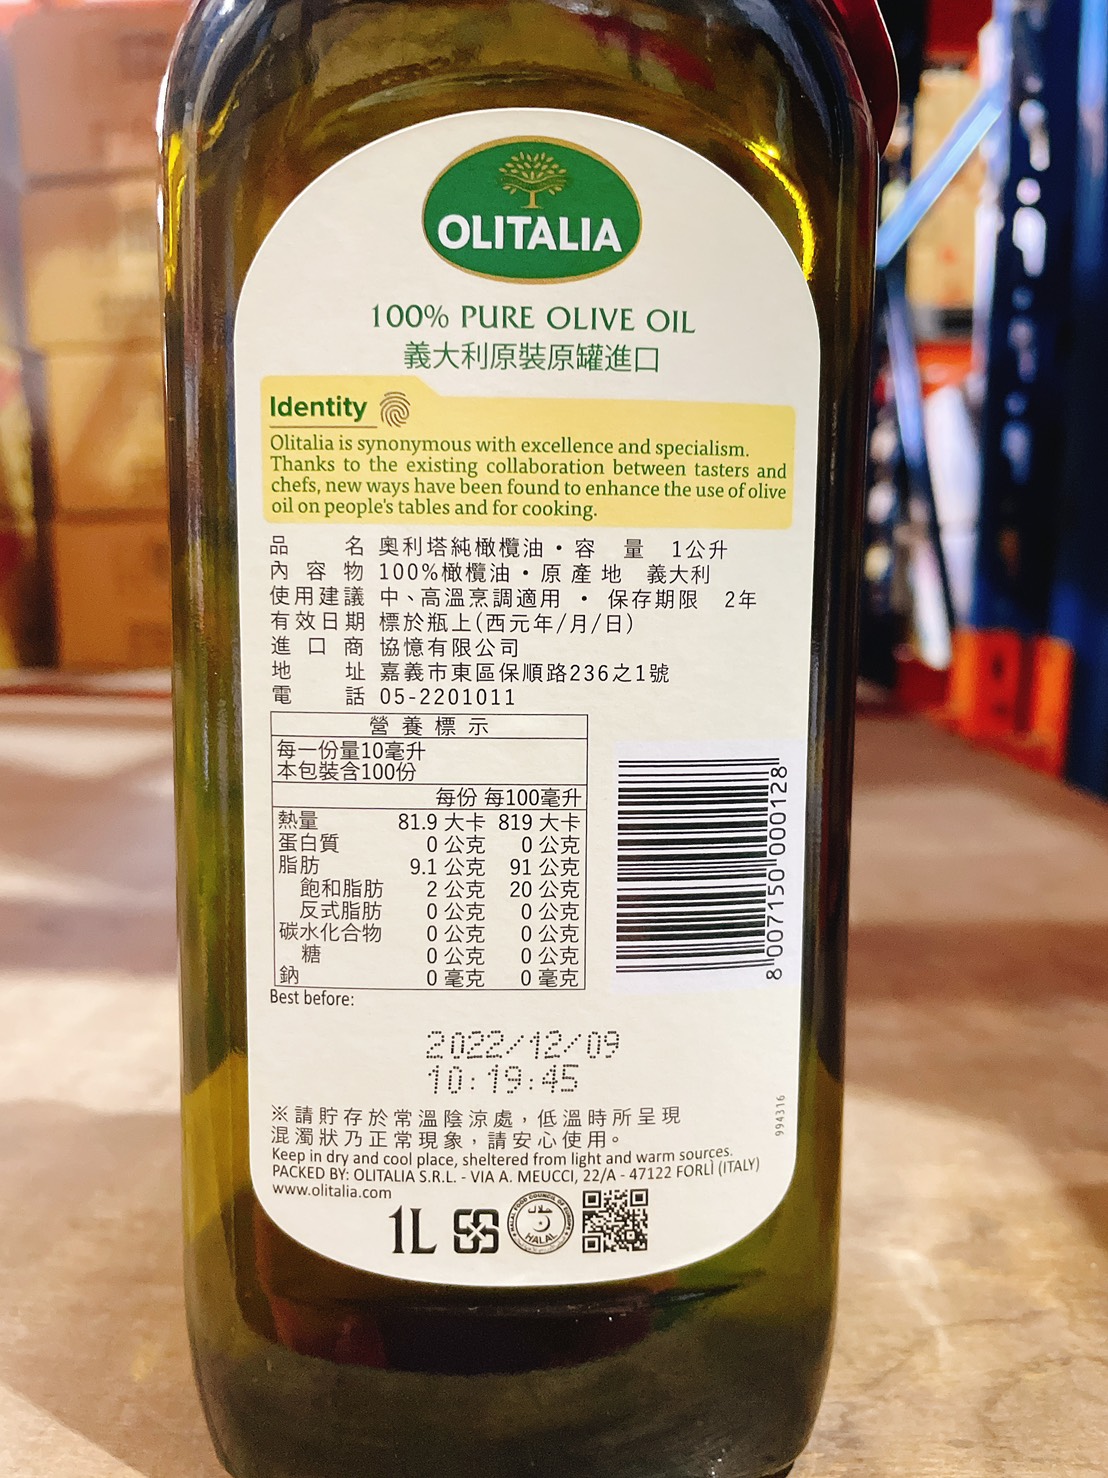 【Olitalia奧利塔】葵花油 玄米油 橄欖油 橄欖+葵花油 葡萄籽油禮盒